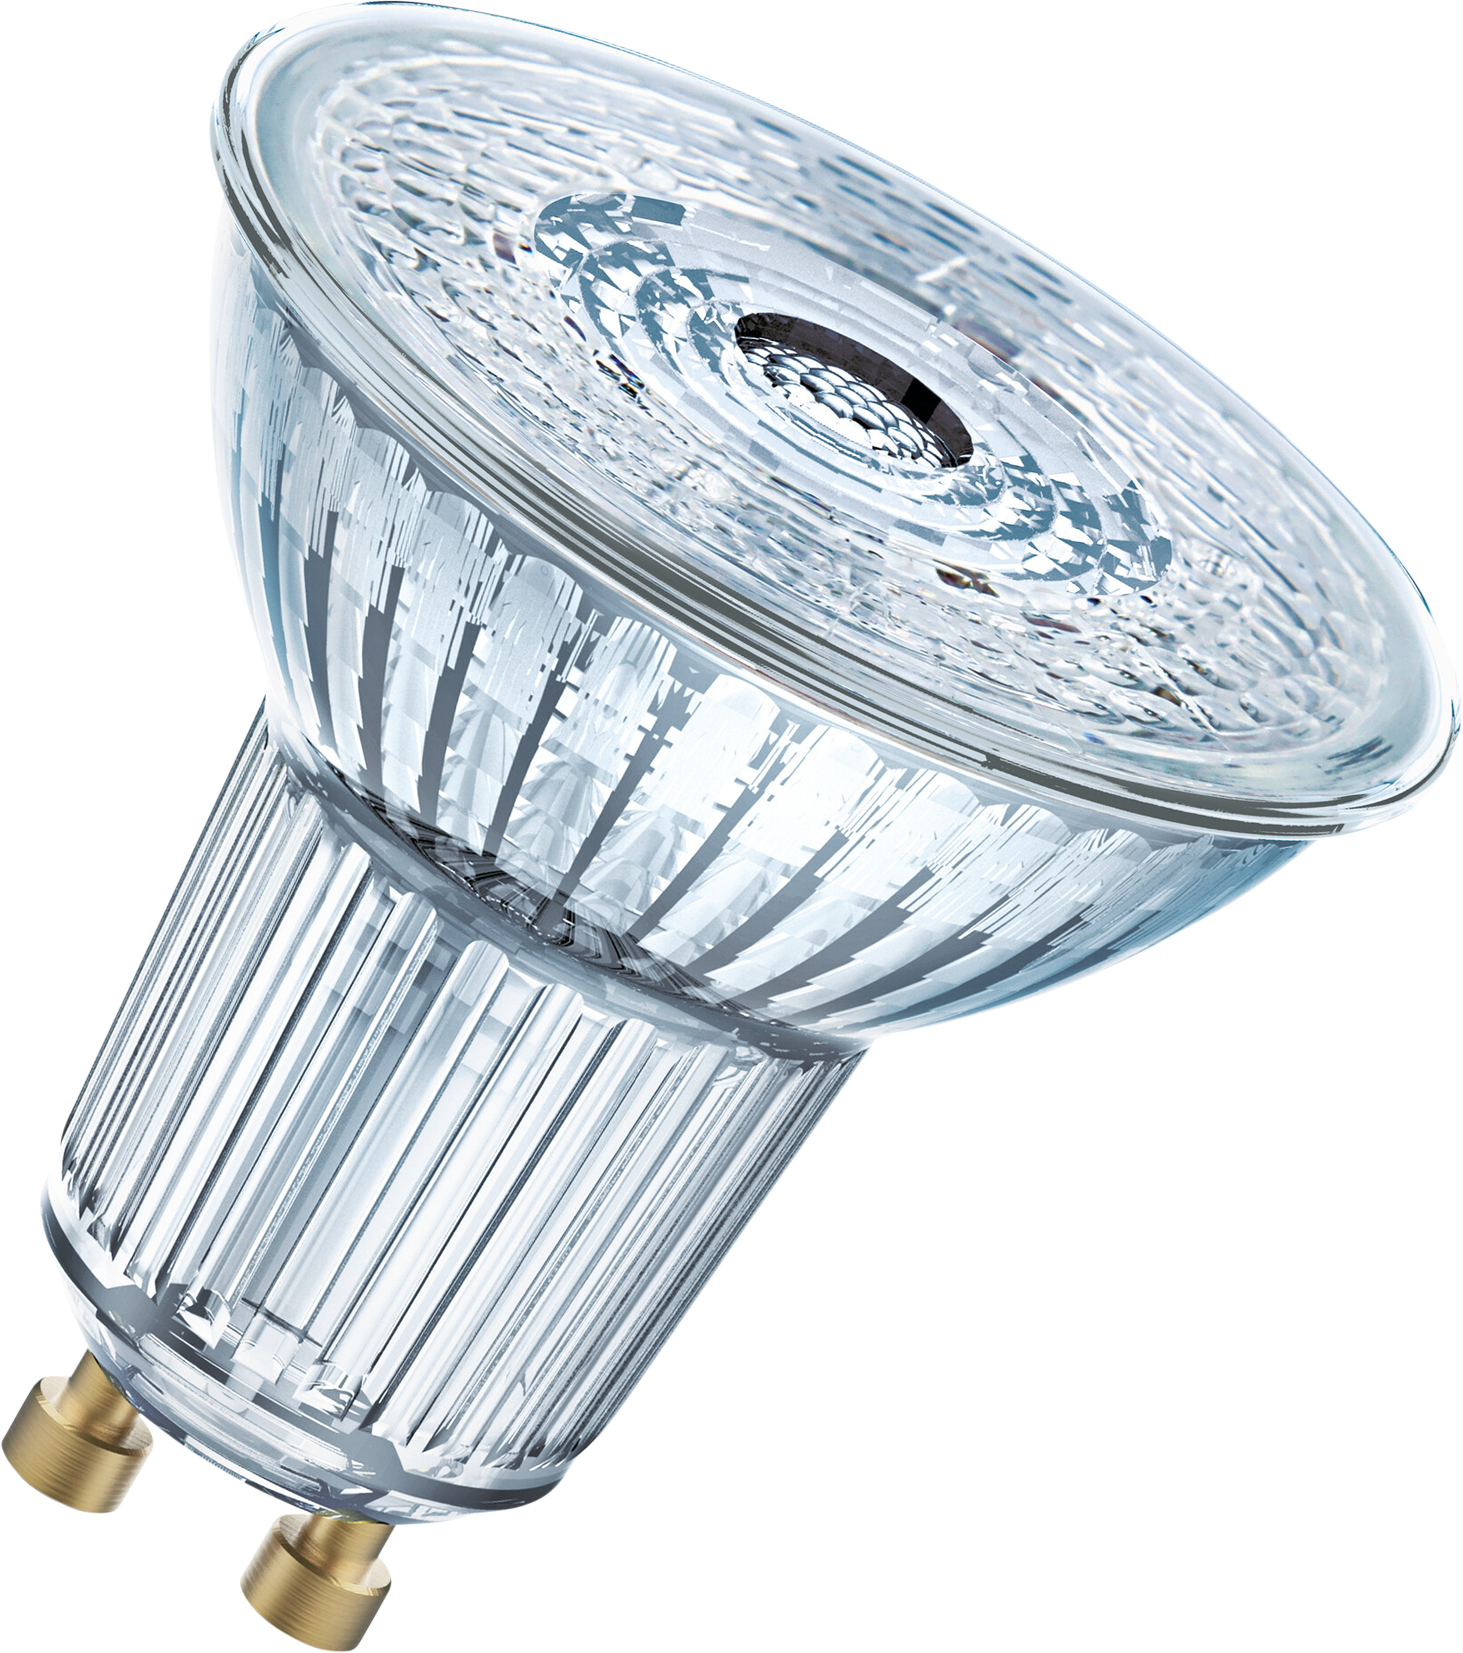 OSRAM LED-Lampe MR16 GU5.3, 4.9W, 350lm, dimmbar, warmweiss - Lampen, Leuchten